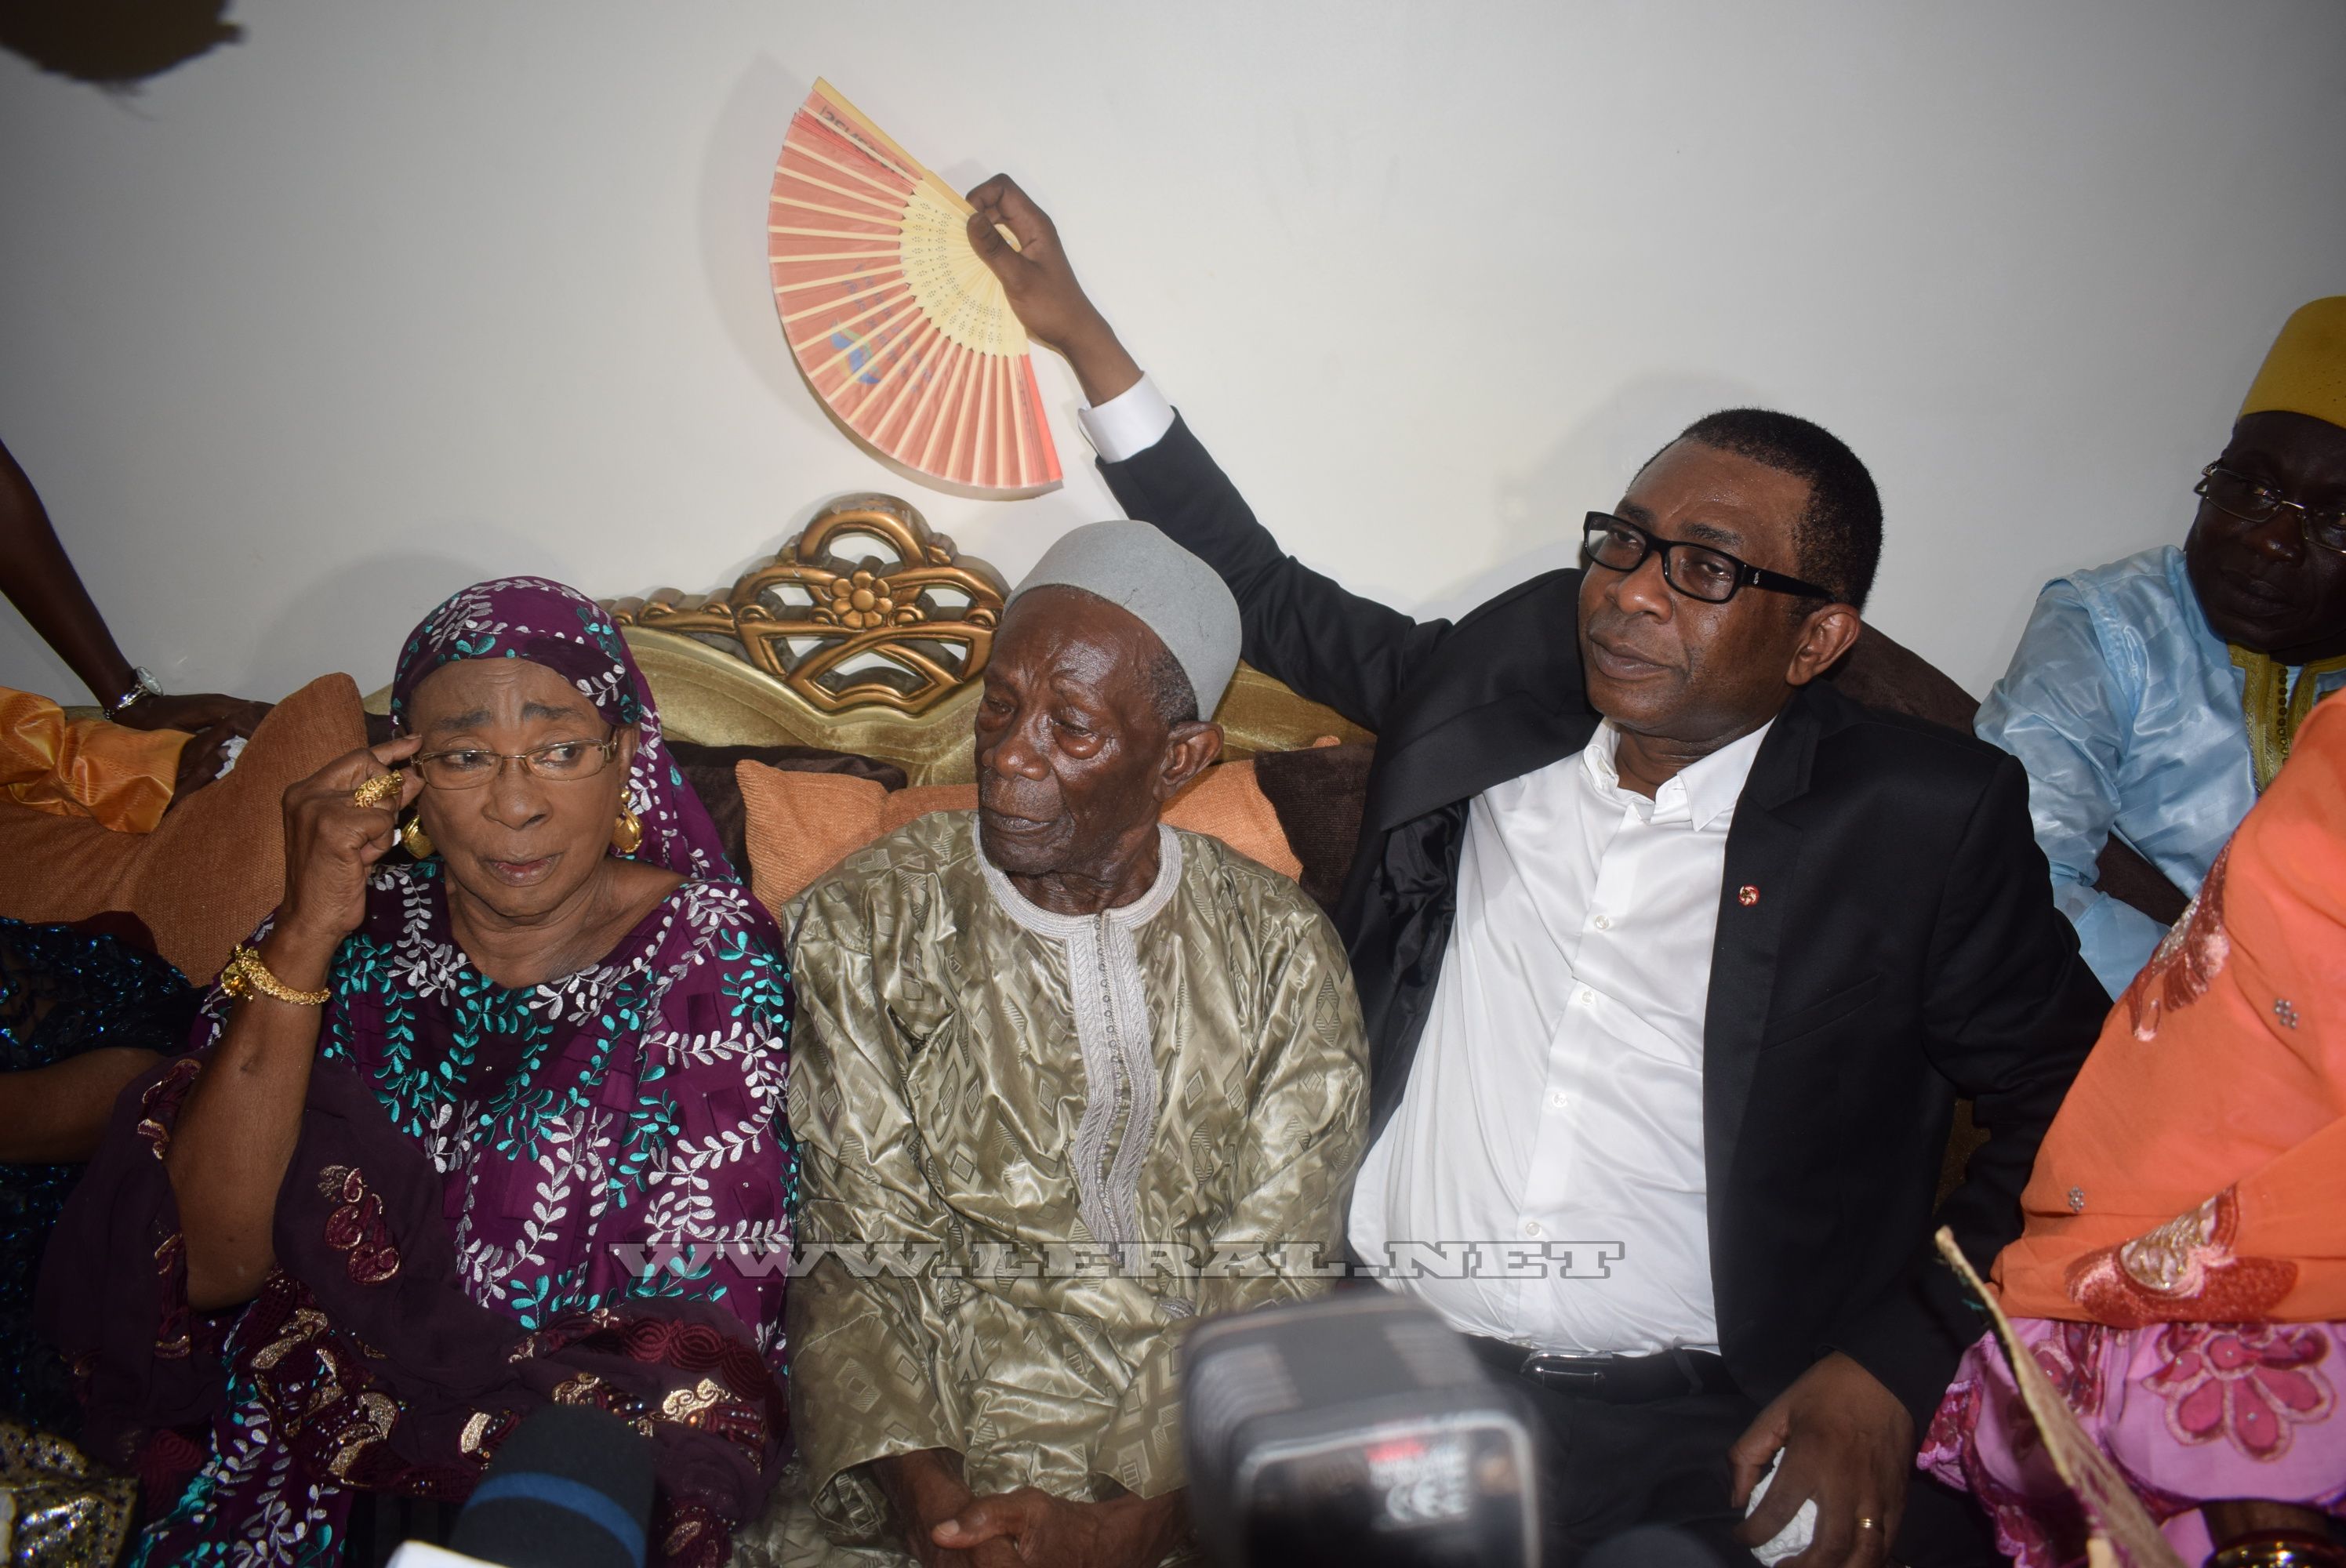 Accueil triomphal de Youssou Ndour à la maison familiale en images